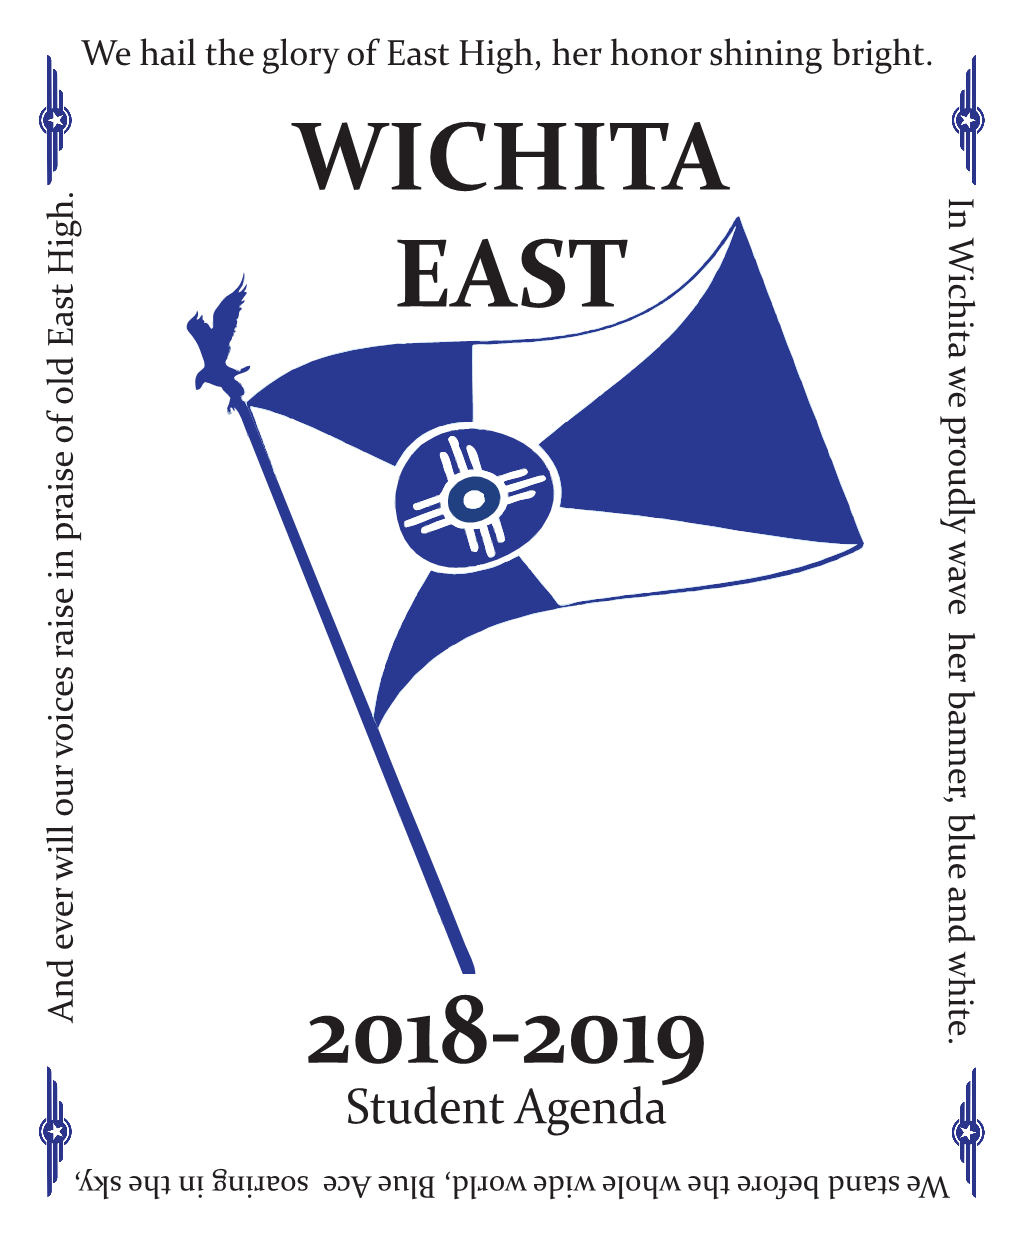 Wichita East